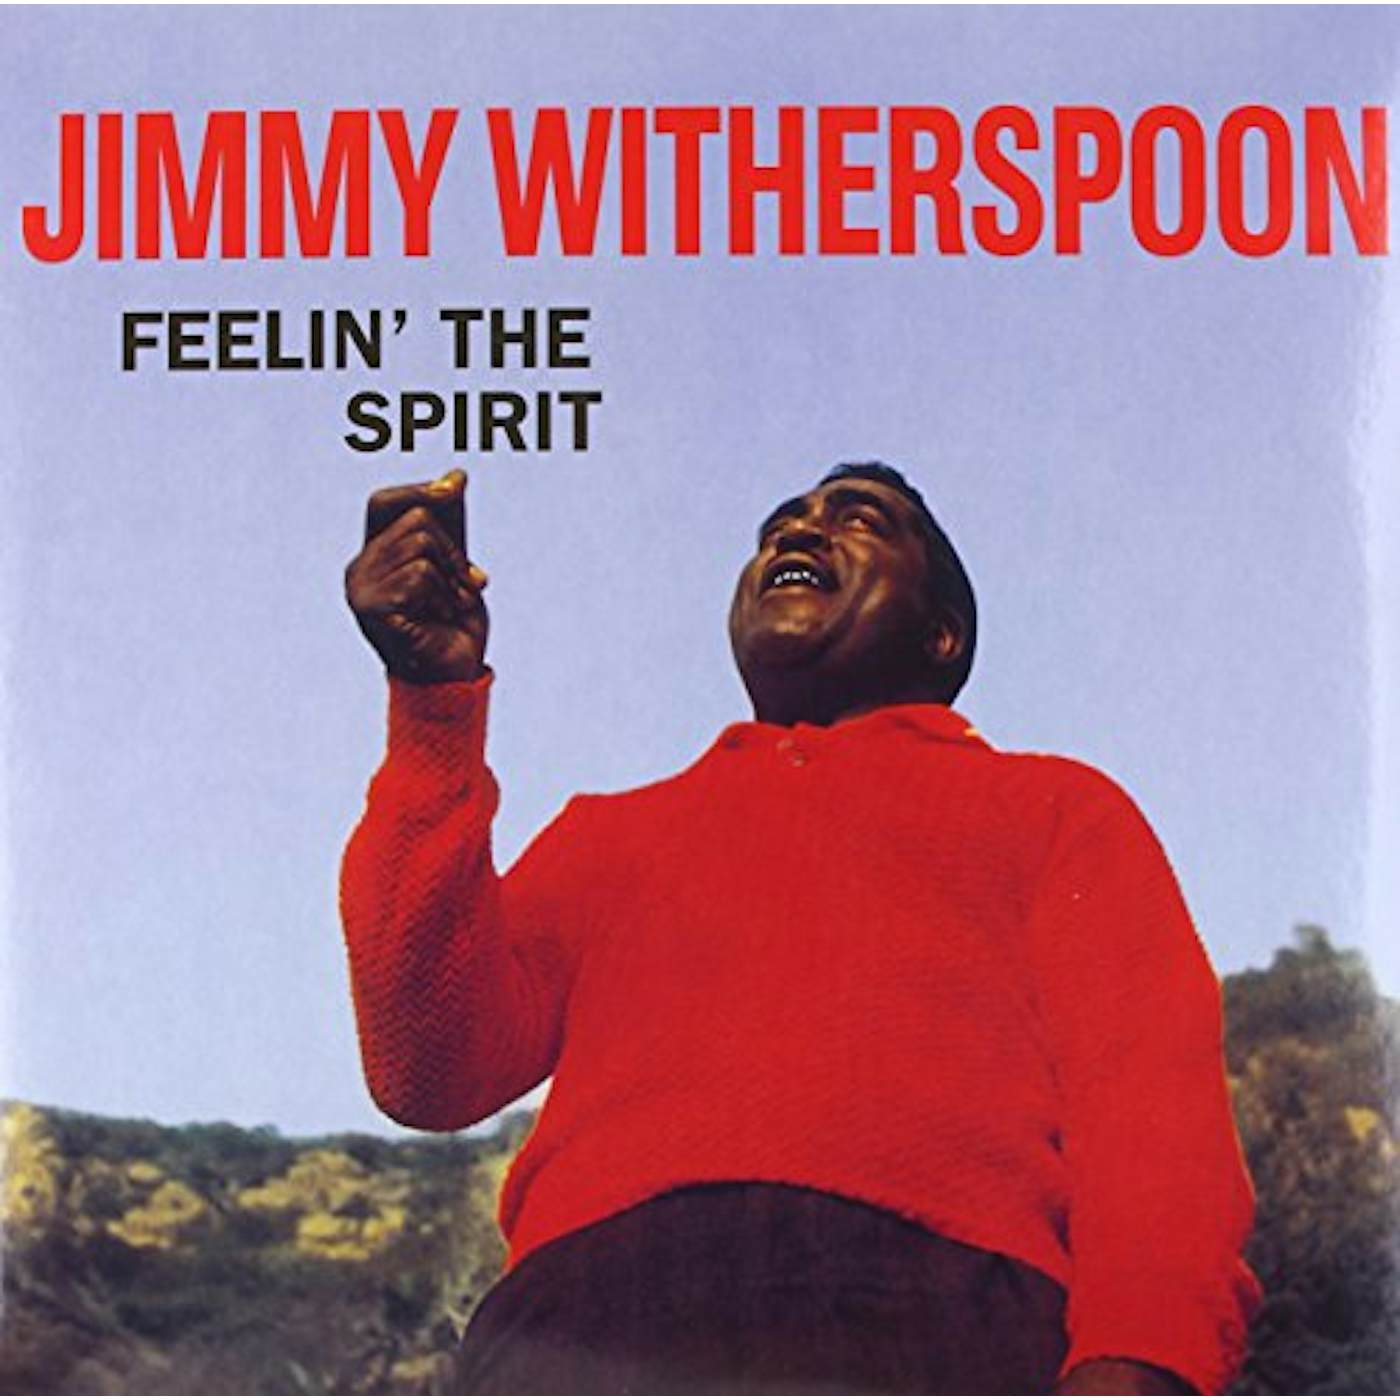 Jimmy Witherspoon FEELIN THE SPIRIT (Vinyl)